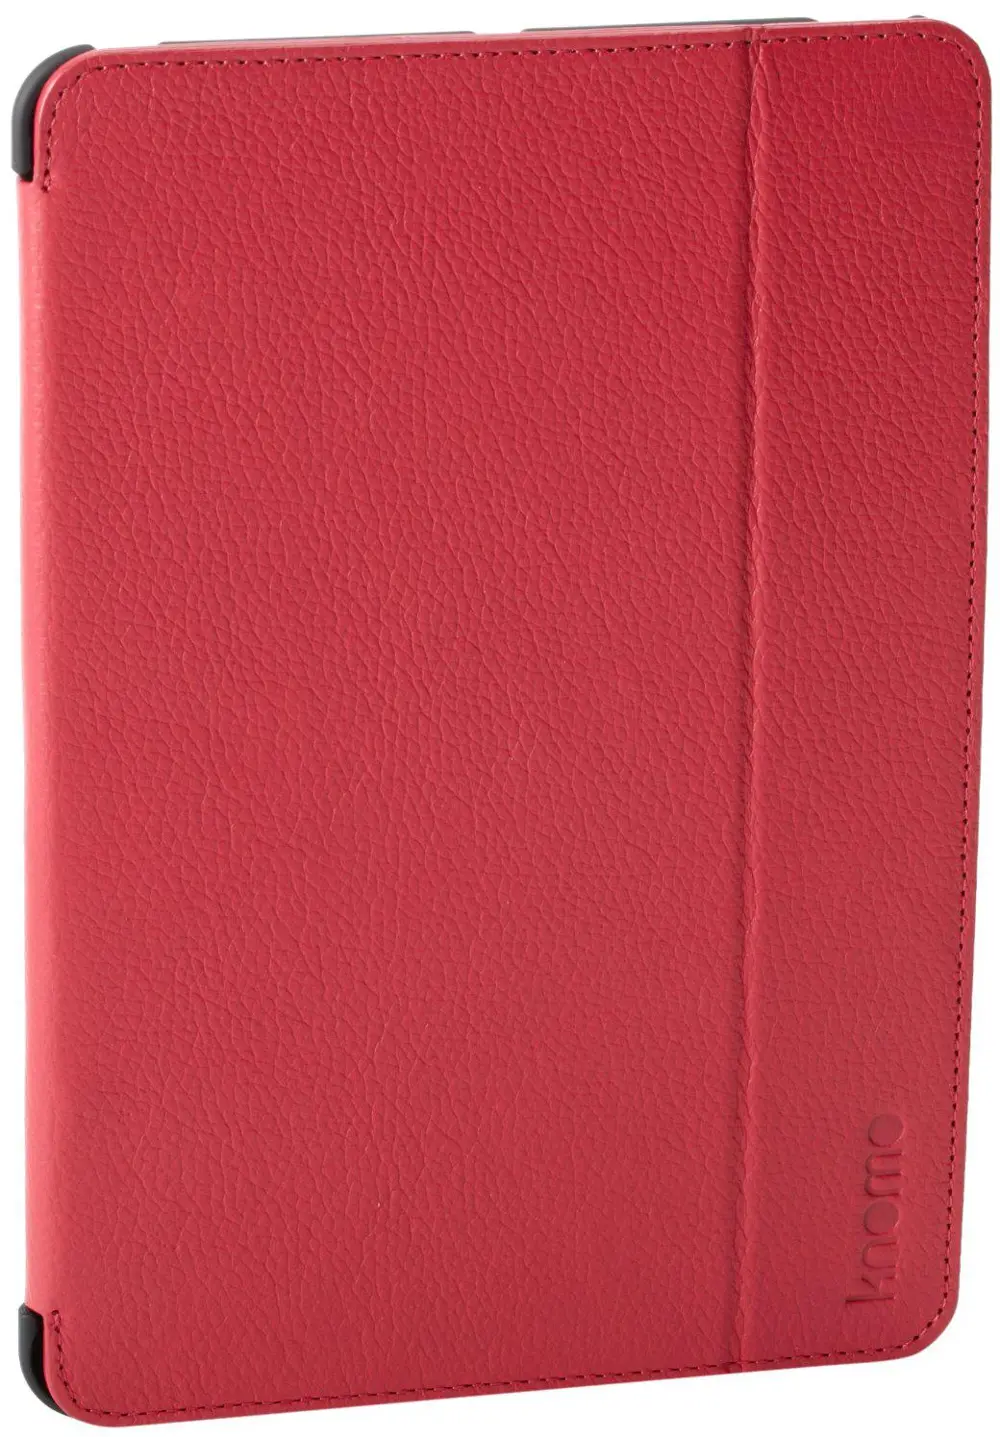 893707-LFMT Knomo Leather Folio for iPad mini - Teaberry-1